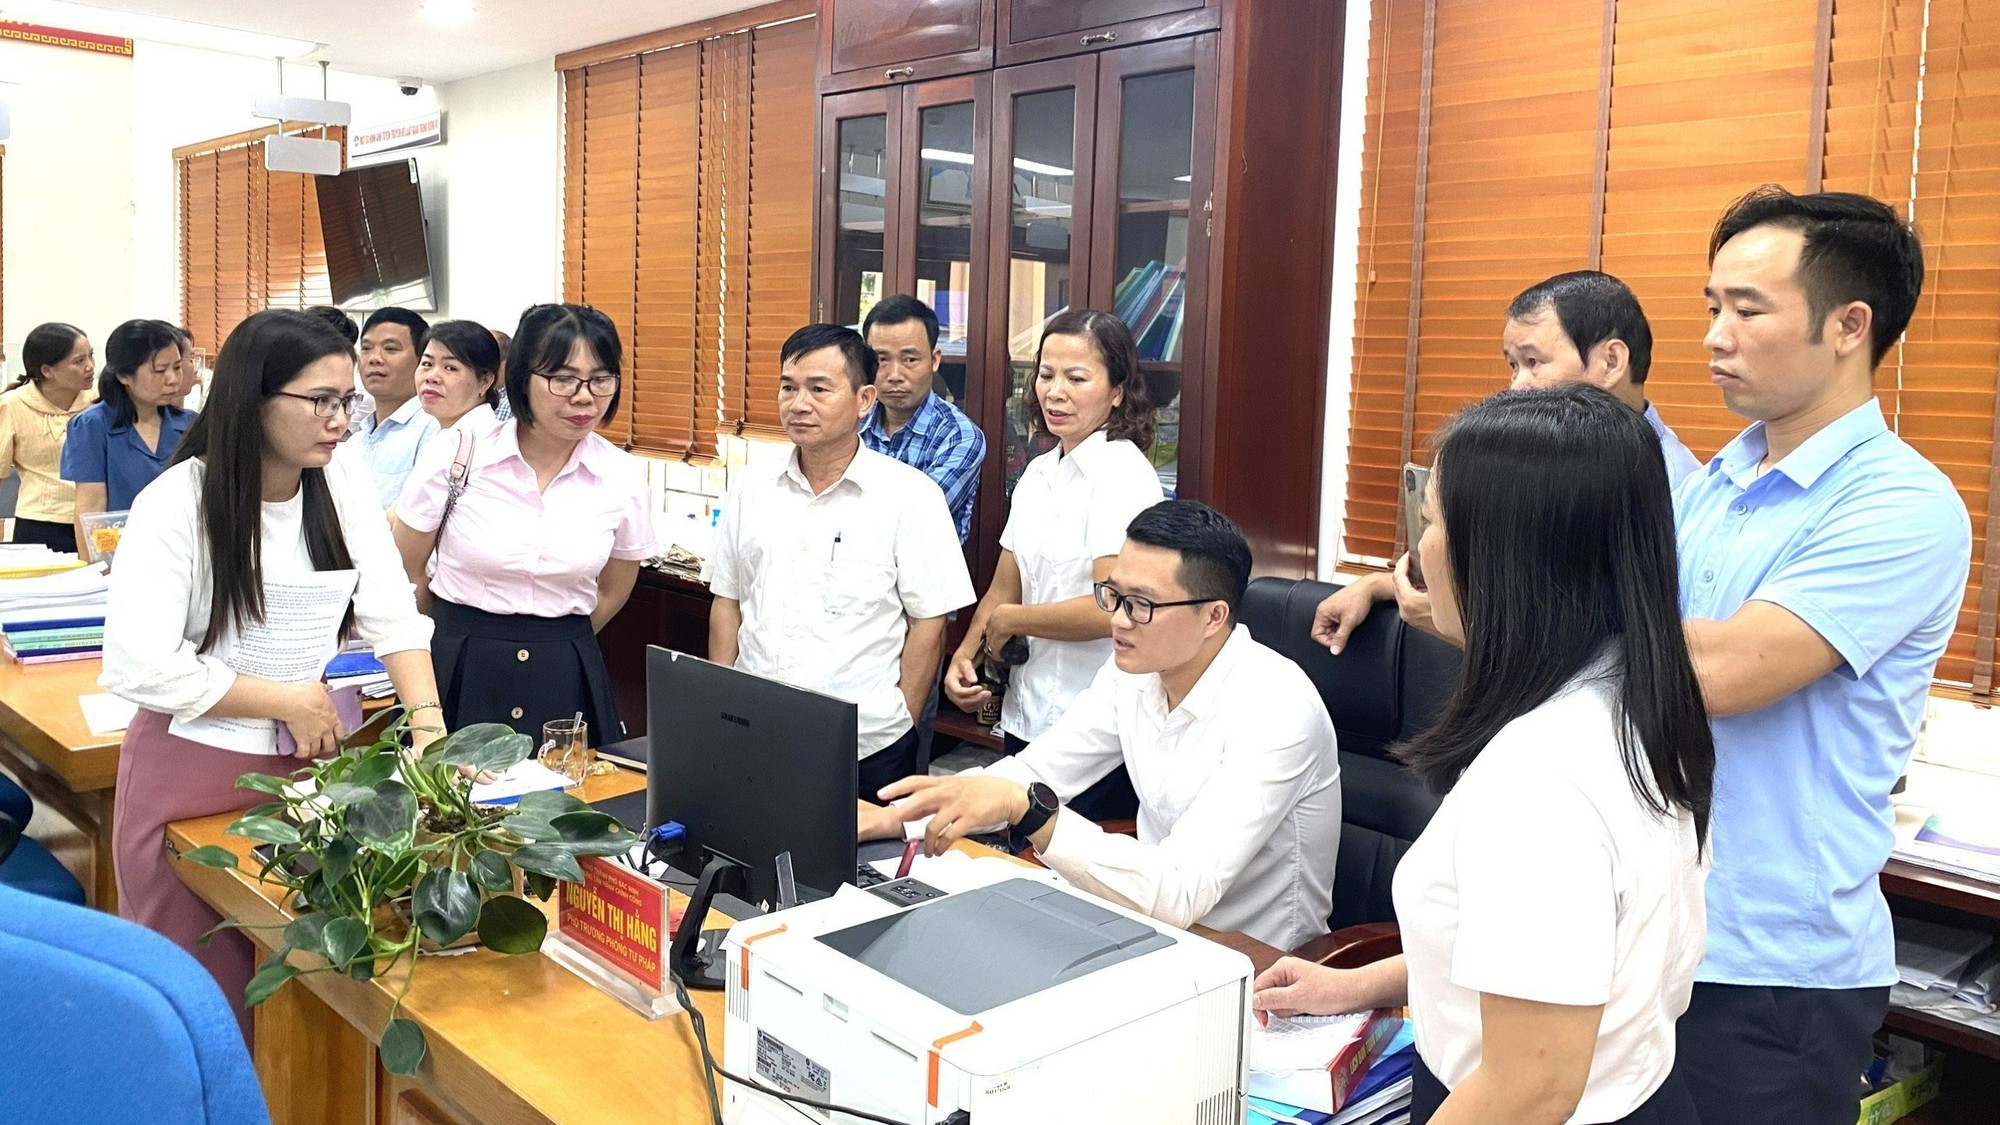 Bắc Ninh: Chuyển biến tích cực trong cung cấp và sử dụng dịch vụ công trực tuyến- Ảnh 1.